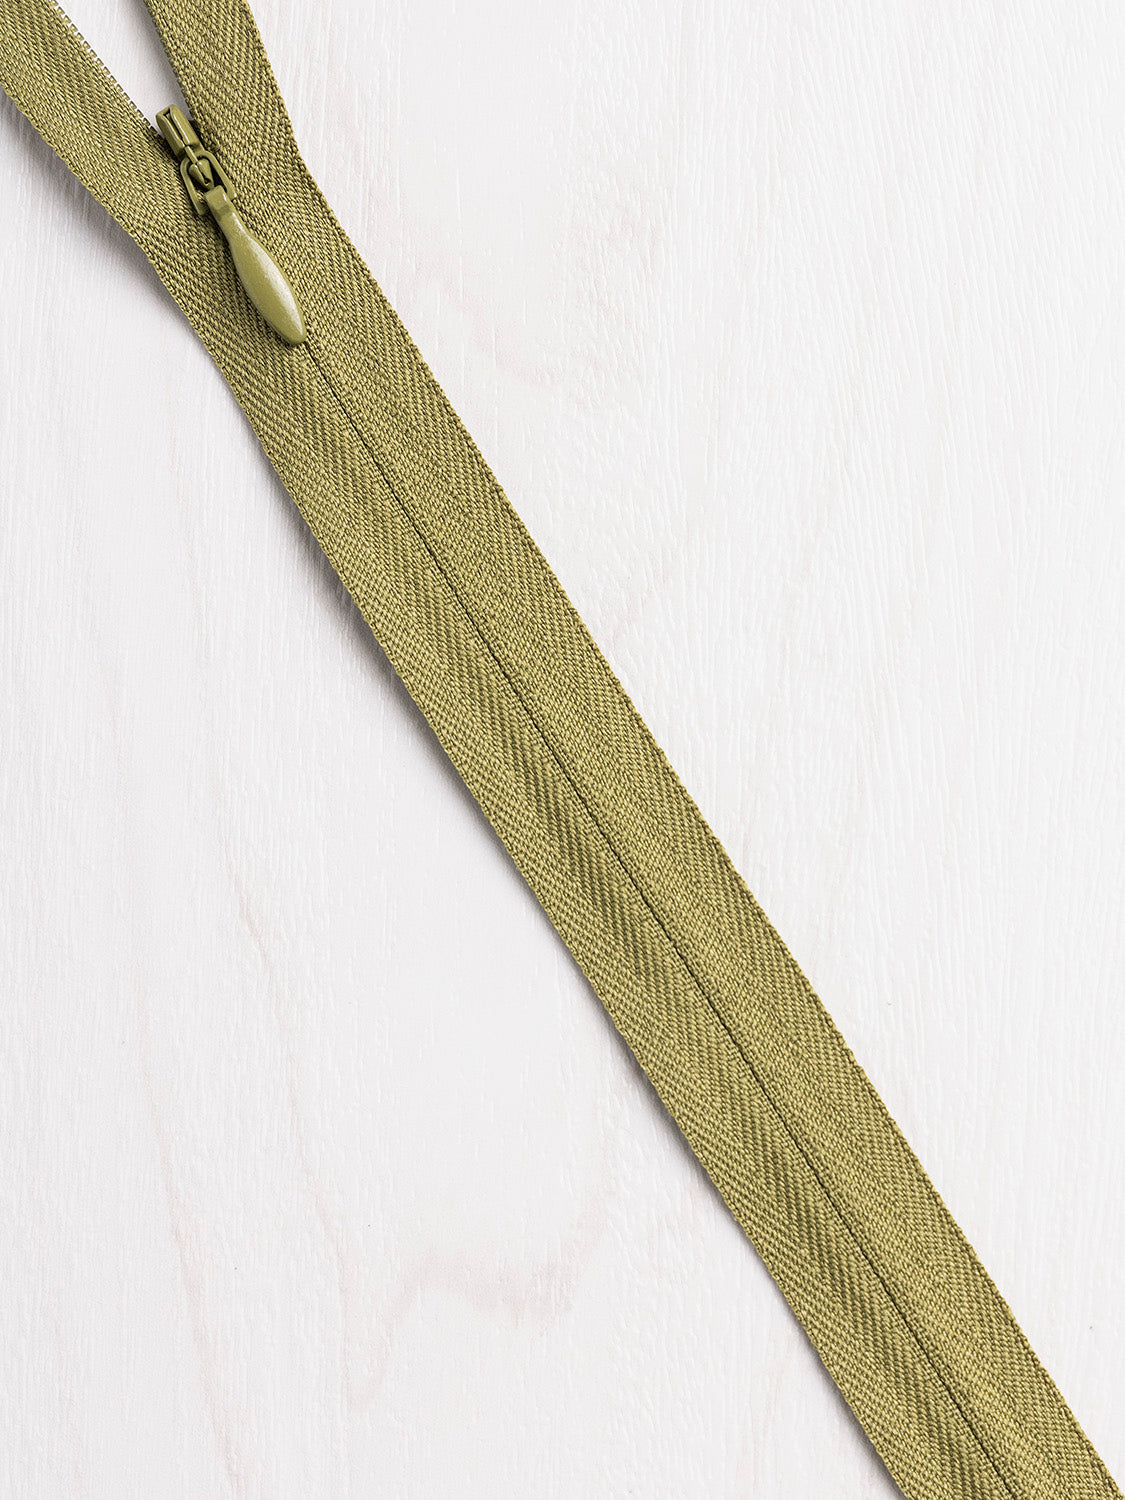 YKK Metal Zippers in Bulk, 5 Pcs, Black Color 580, Gold Teeth